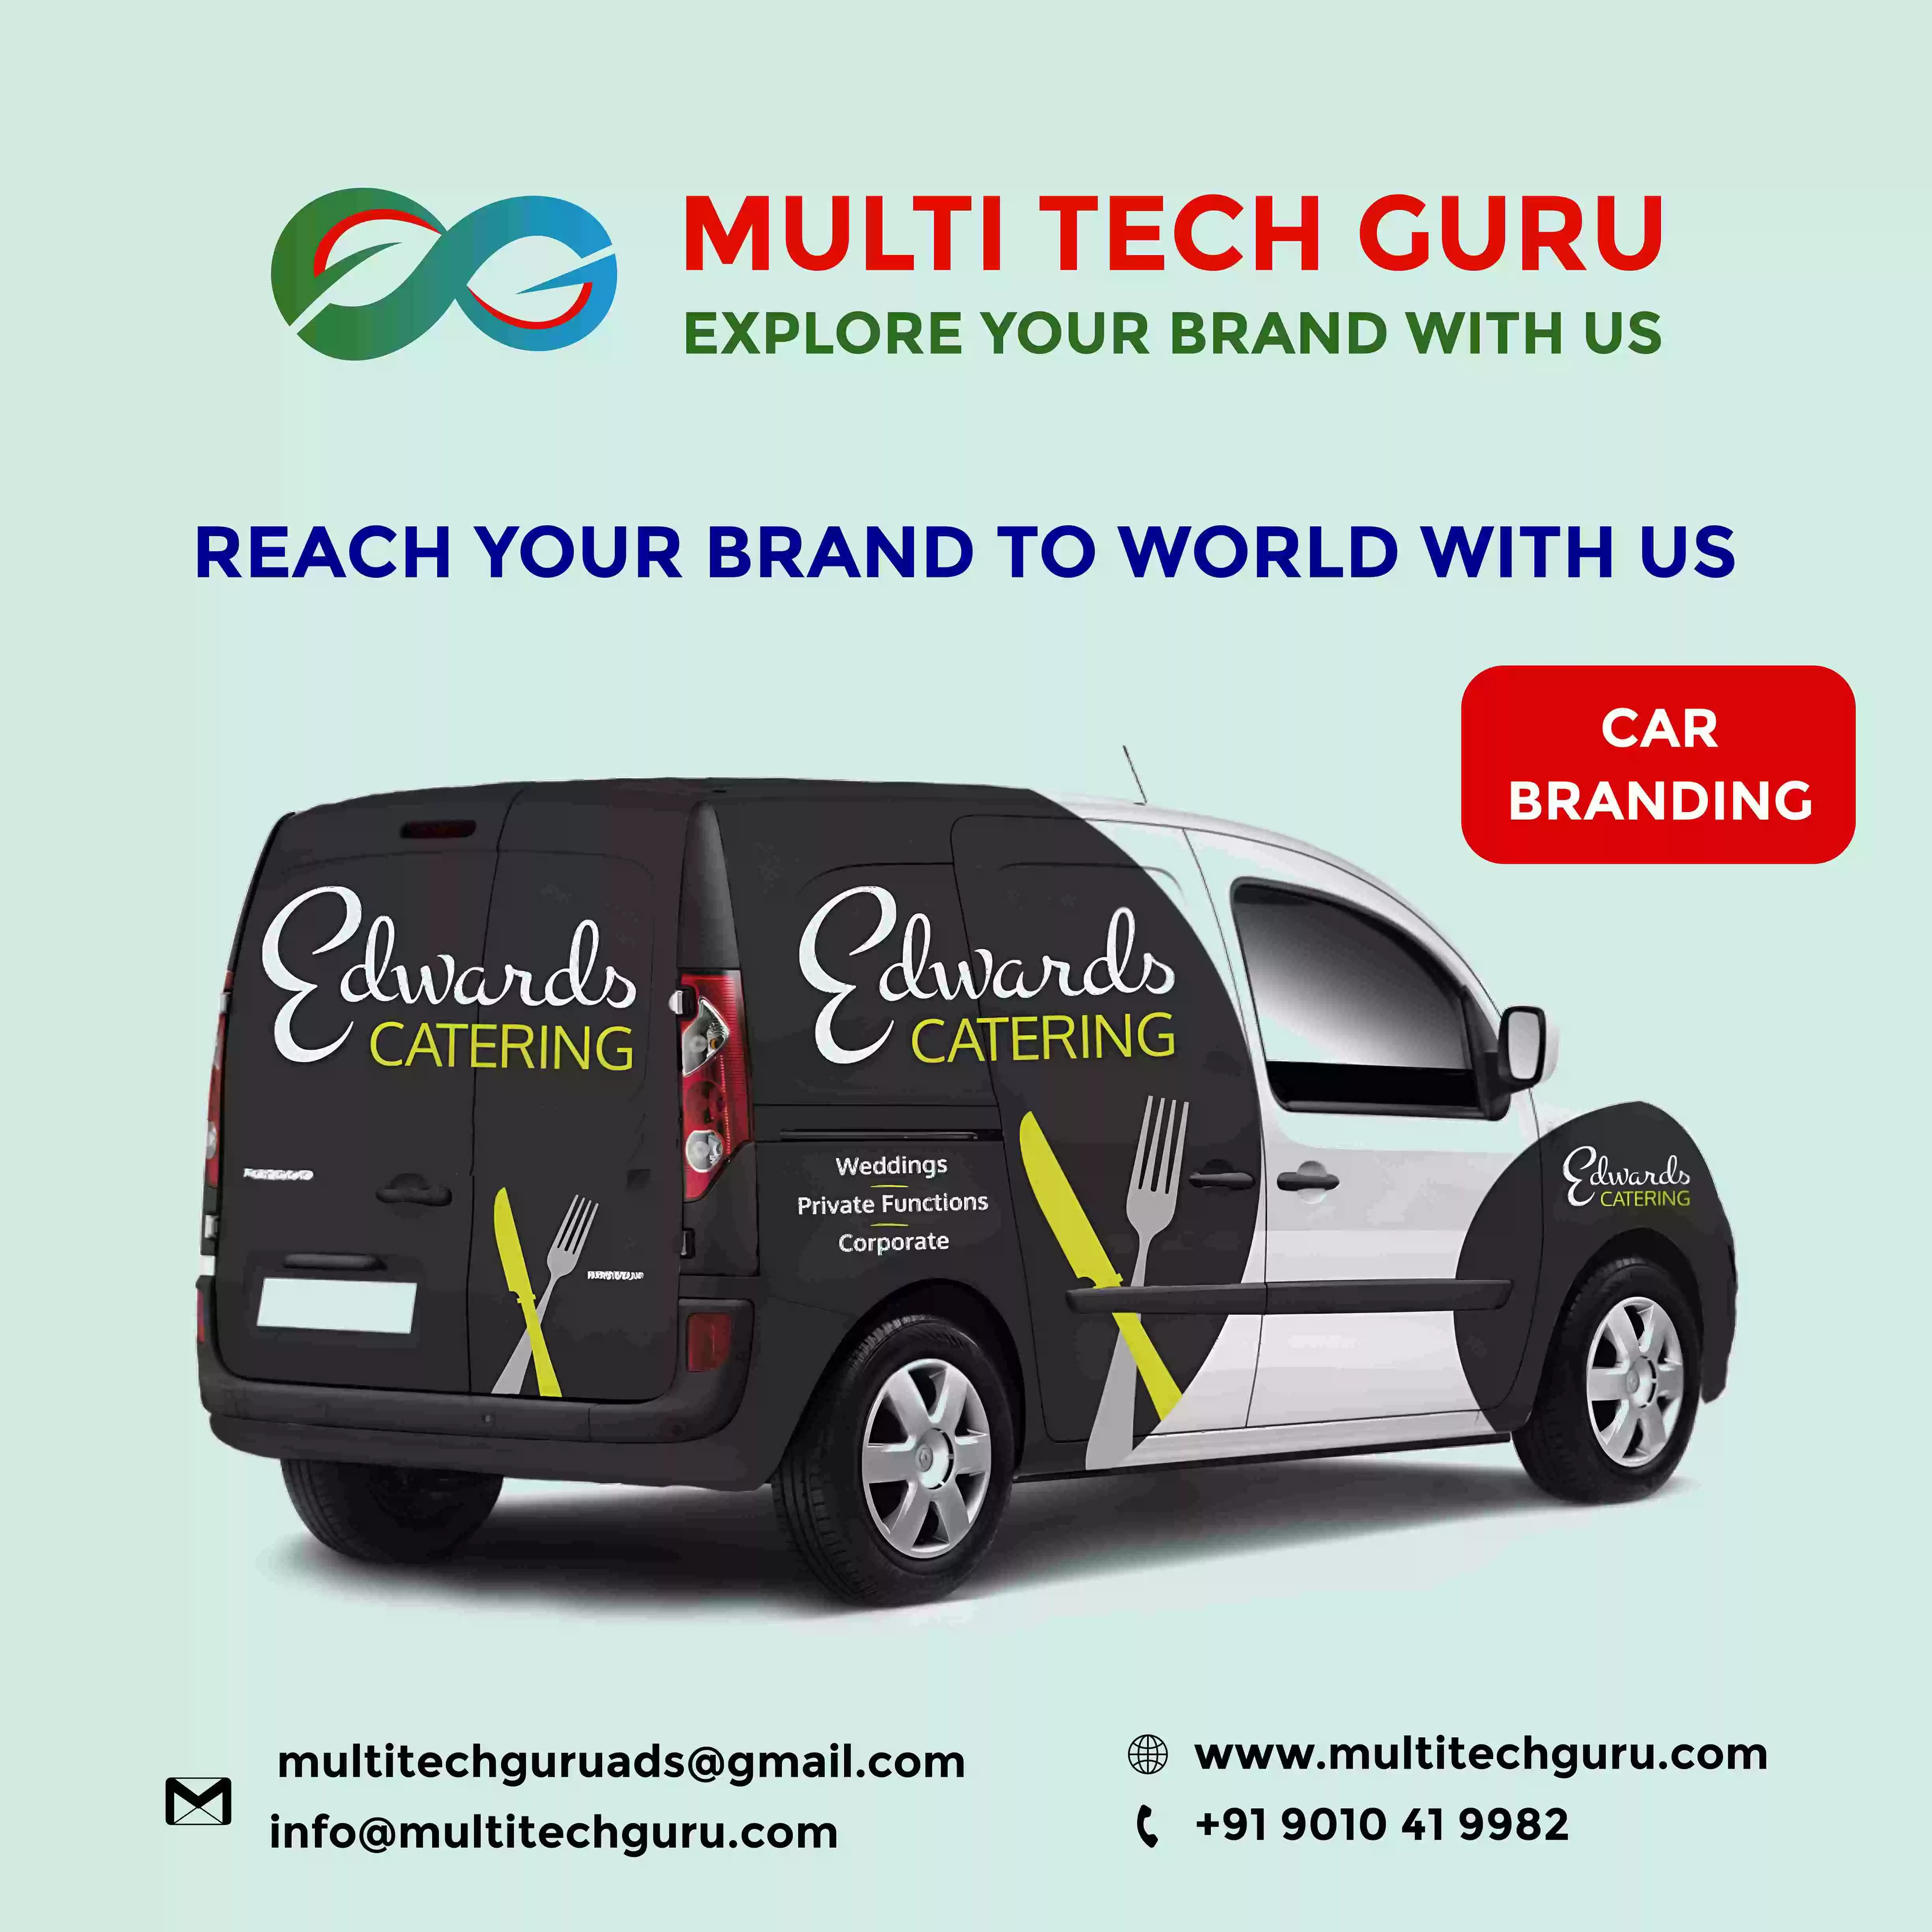 Car-Branding-advertising-marketing-Multitechguru.com-9010419982-Outdoor-media-advertising-Print-Media-Services.jpg